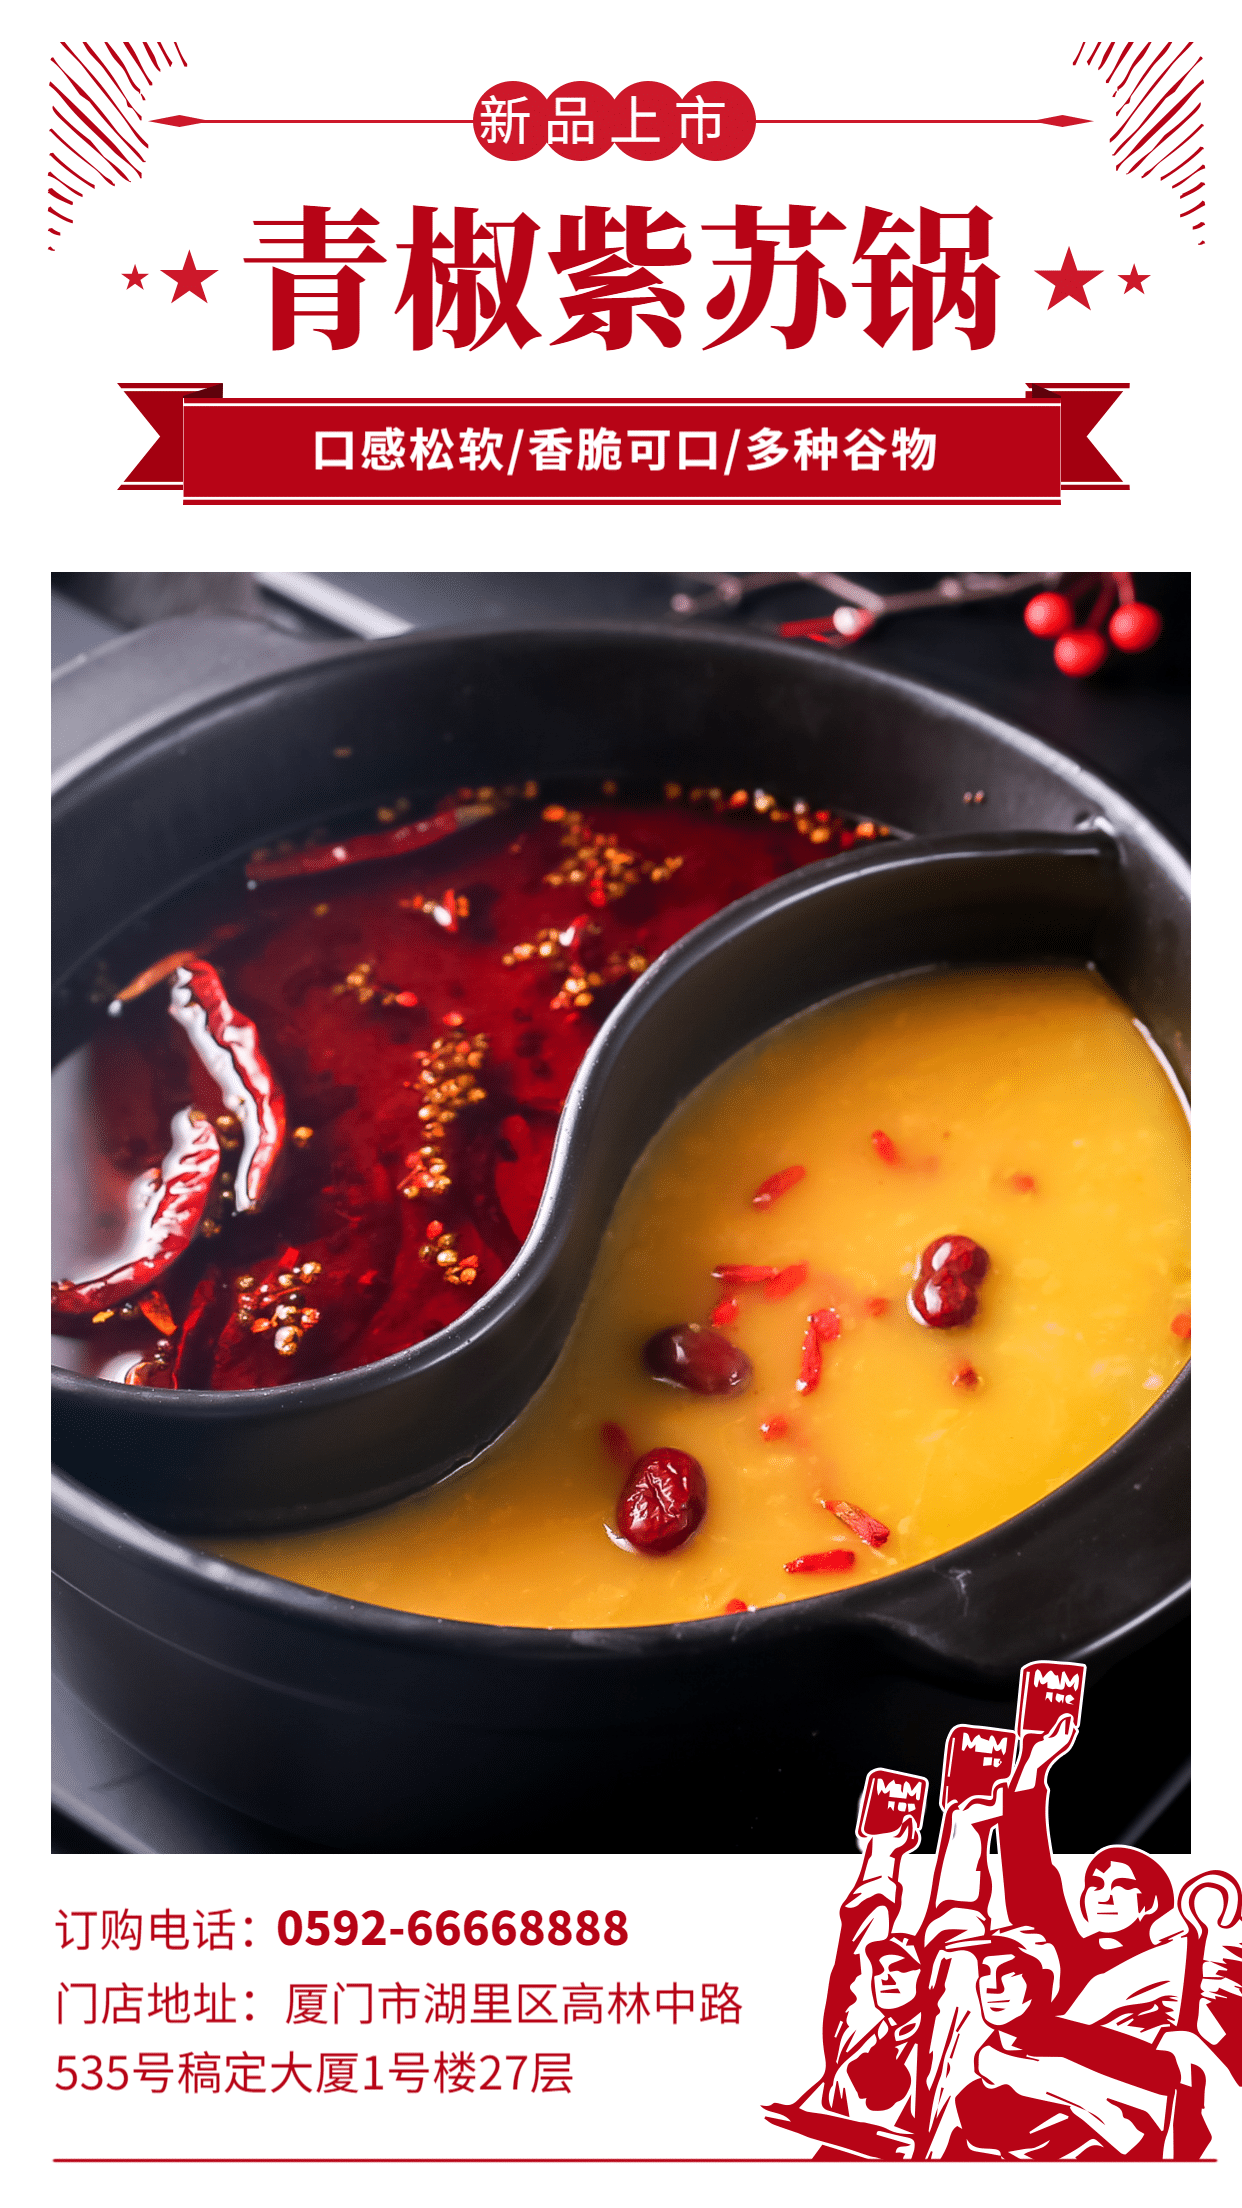 餐饮美食简约中国风新品上市手机海报预览效果